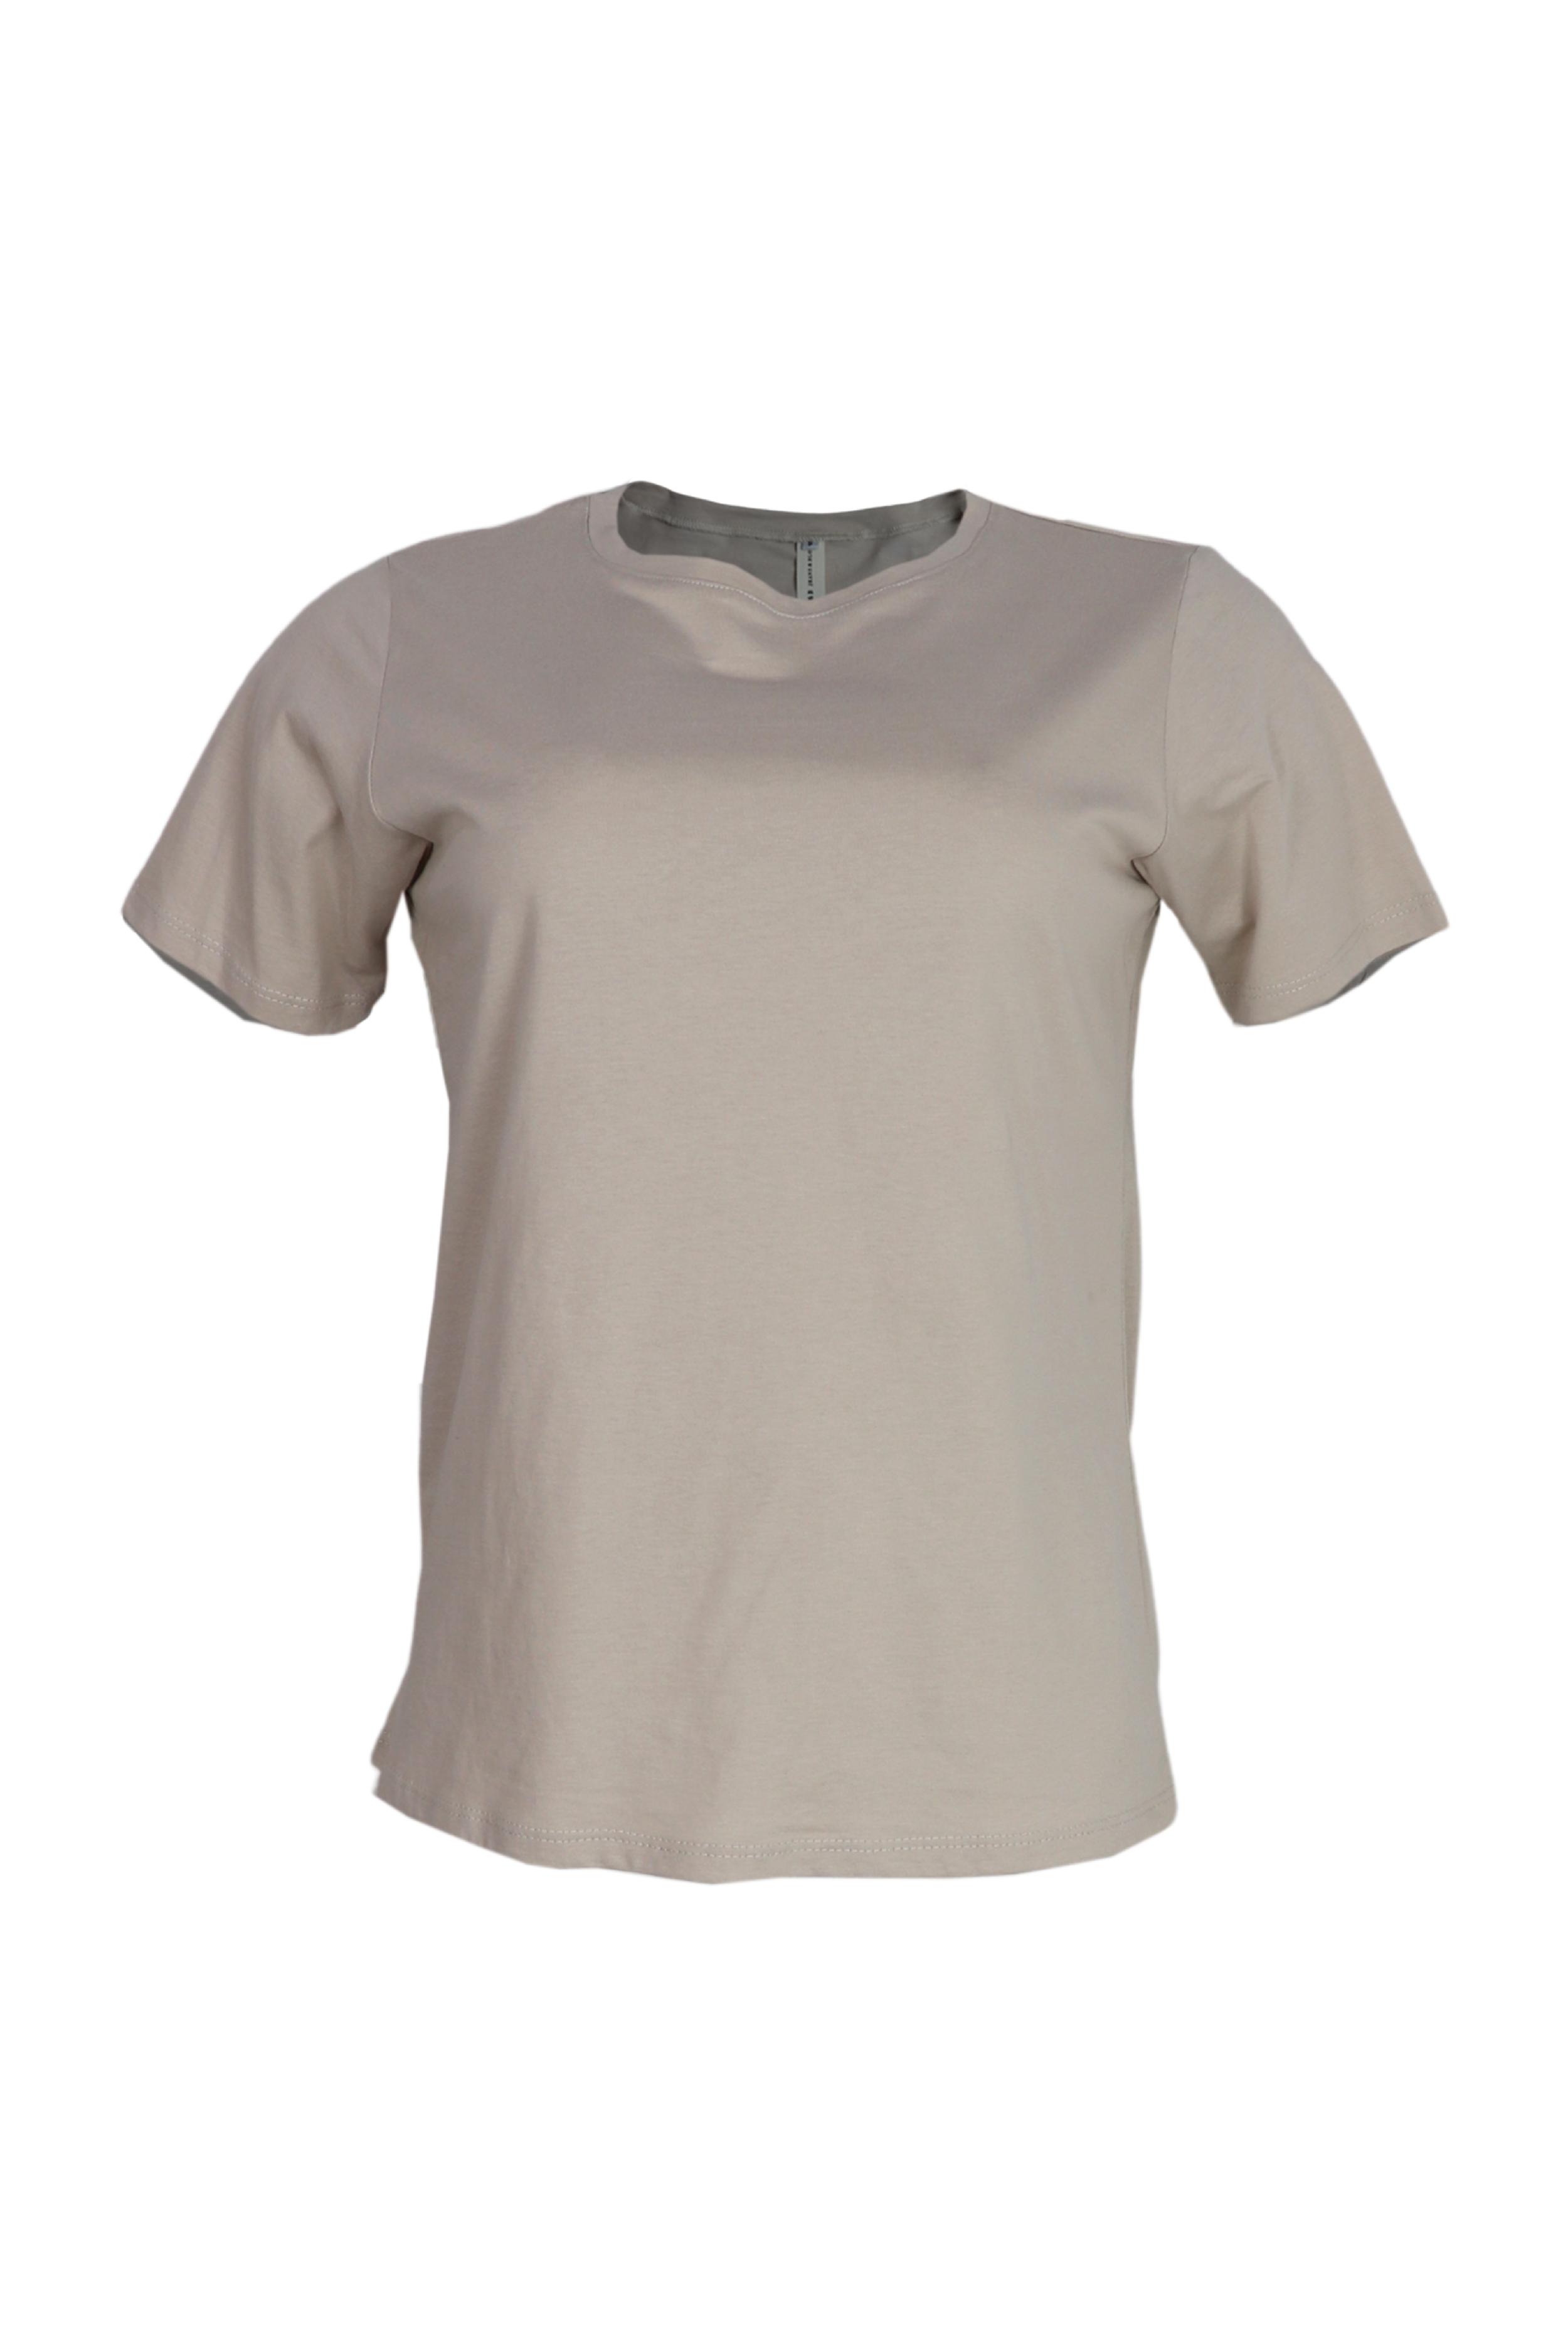 Camiseta básica cuello redondo color arena